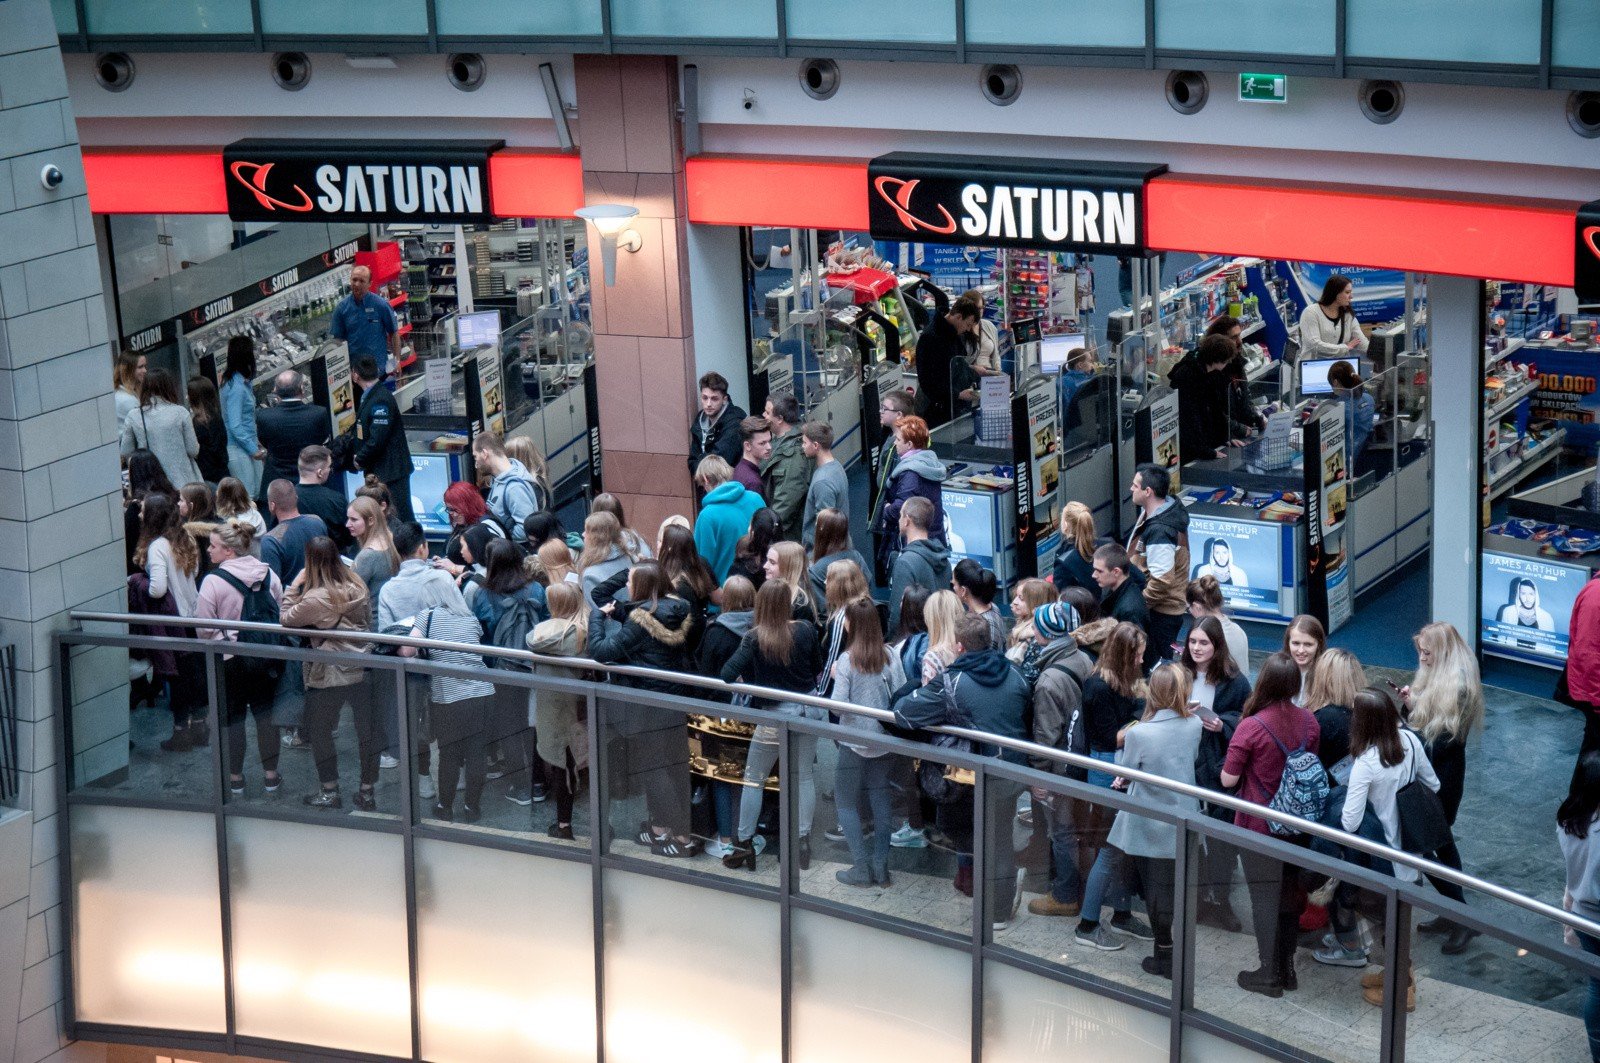 Sklepy Saturn to teraz MediaMarkt. Zaskoczeni? Sieć Saturn przejdzie  rebranding i zwiększy liczbę placówek pod swoim szyldem | Dziennik Zachodni